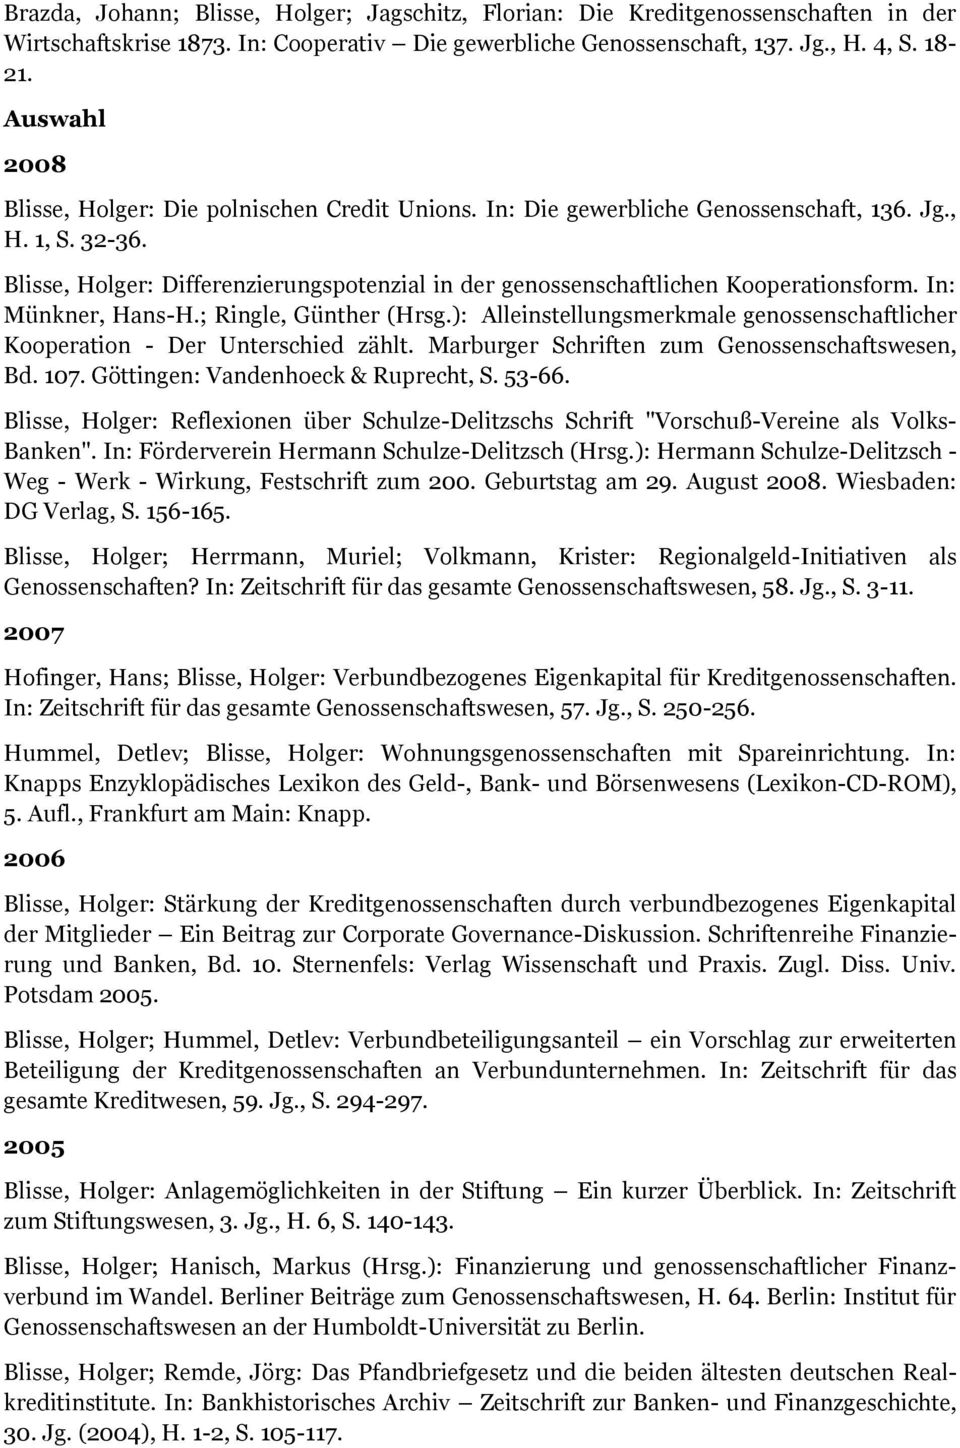 Blisse, Holger: Differenzierungspotenzial in der genossenschaftlichen Kooperationsform. In: Münkner, Hans-H.; Ringle, Günther (Hrsg.